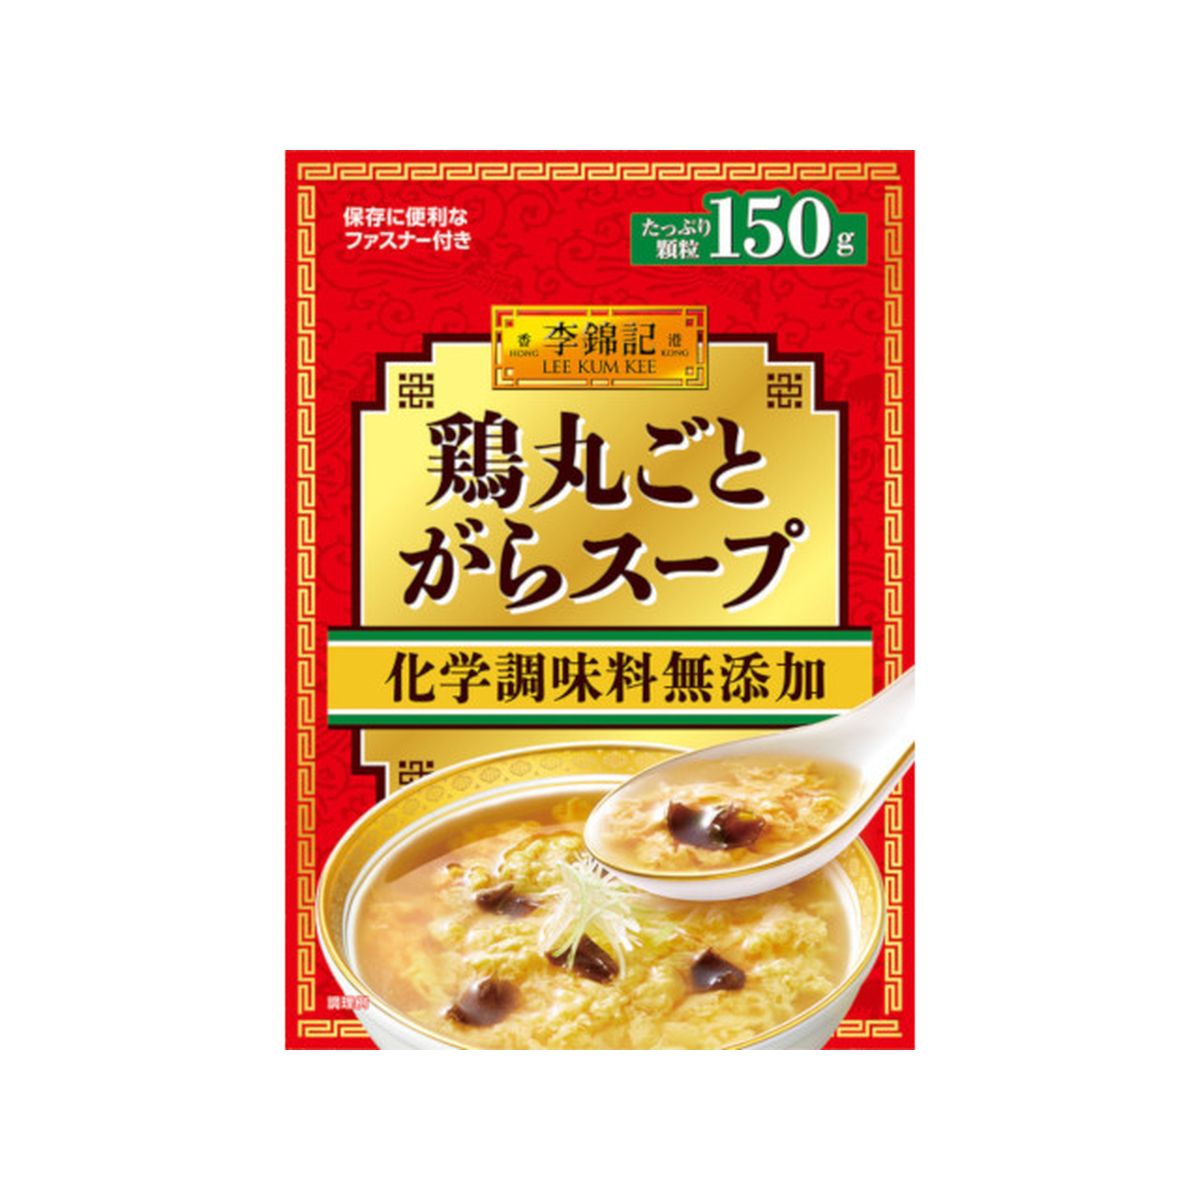 【35】【6個入り】李錦記 鶏丸ごとがらスープ 化学調味料無添加 袋 150g